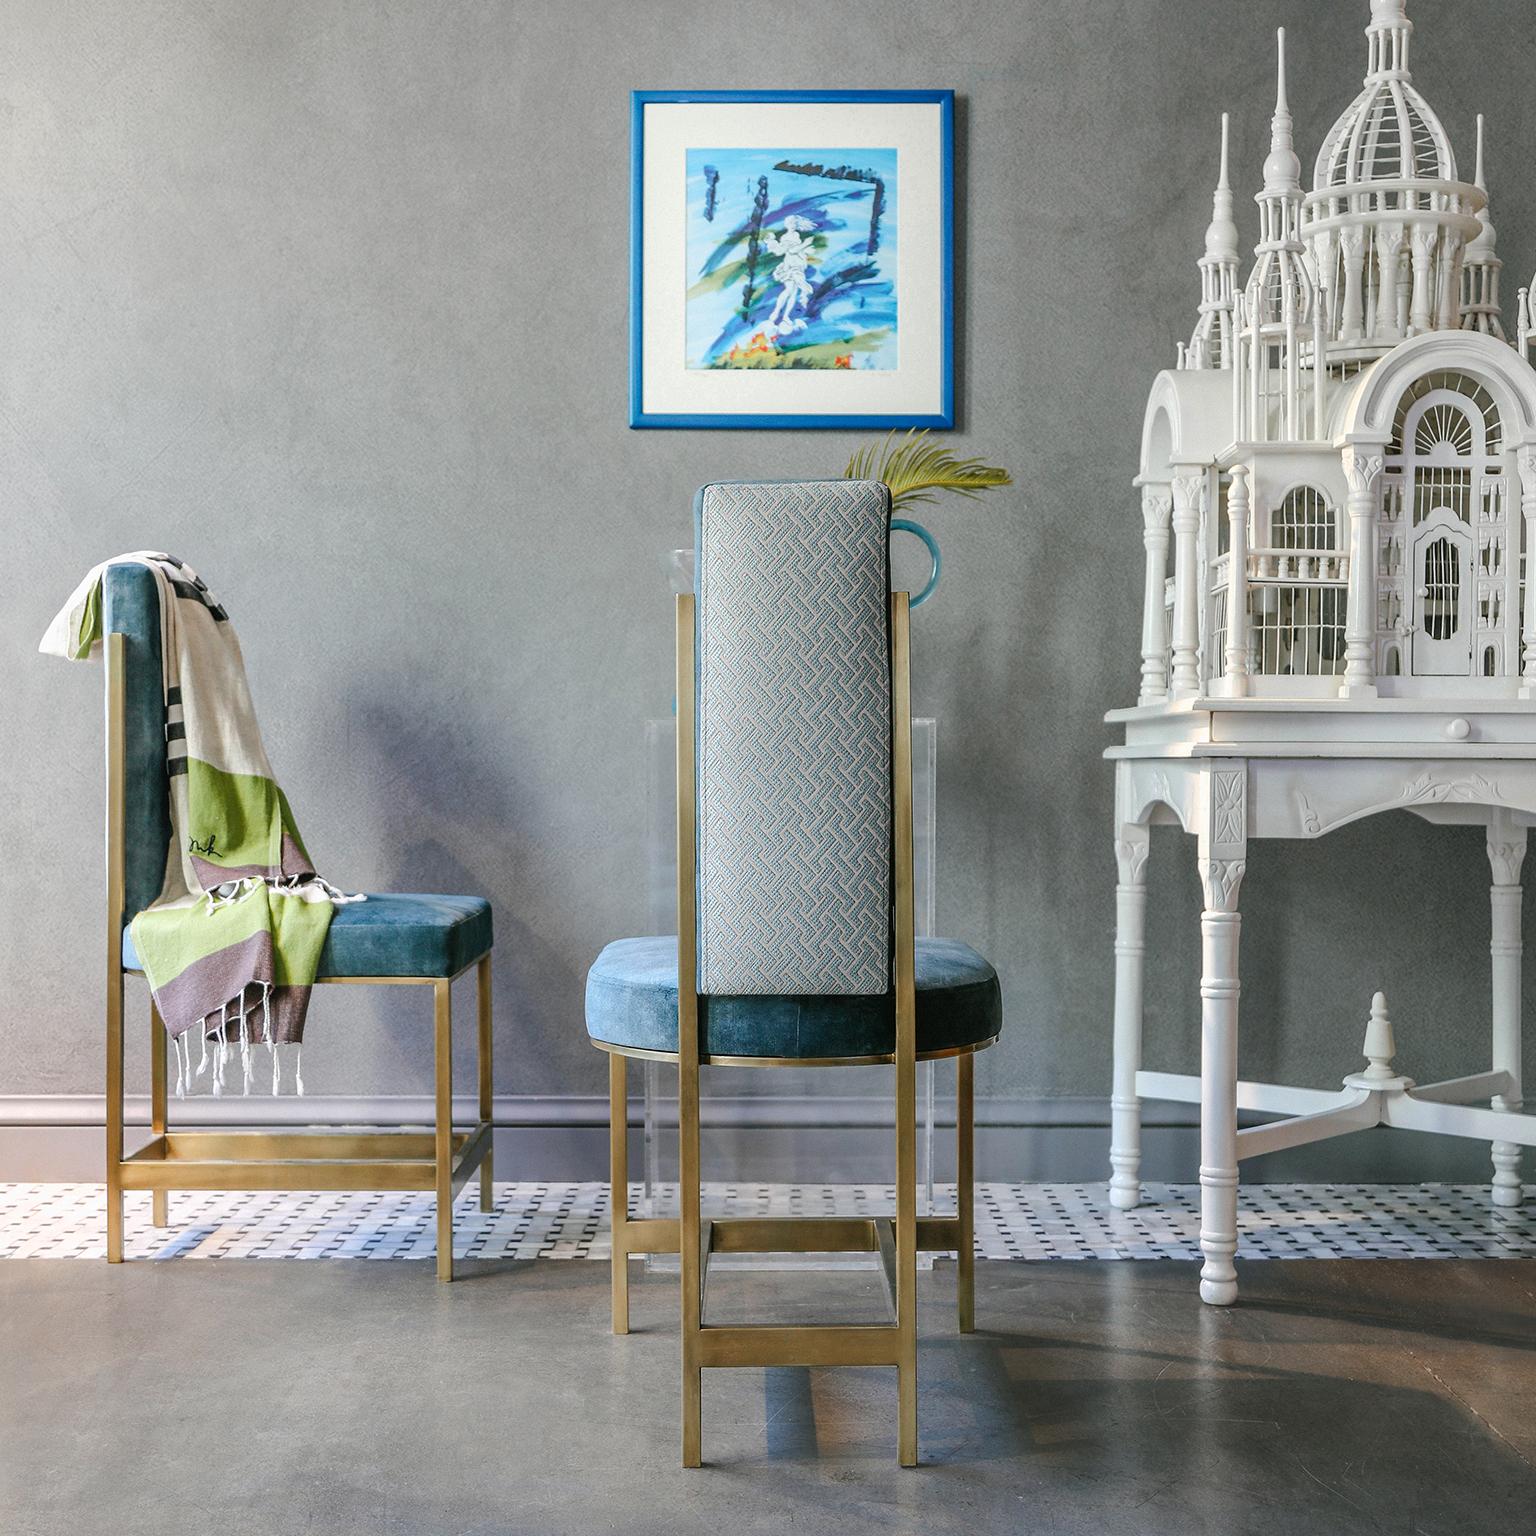 Der blaue Stuhl bringt mit seiner feinen Verarbeitung und ästhetischen Form in Verbindung mit praktischem Komfort Ihre Resonanz auf die Antike zum Ausdruck.

Inspiriert von antiken Städten, bringt die Serie RECALLED die faszinierende Ästhetik der